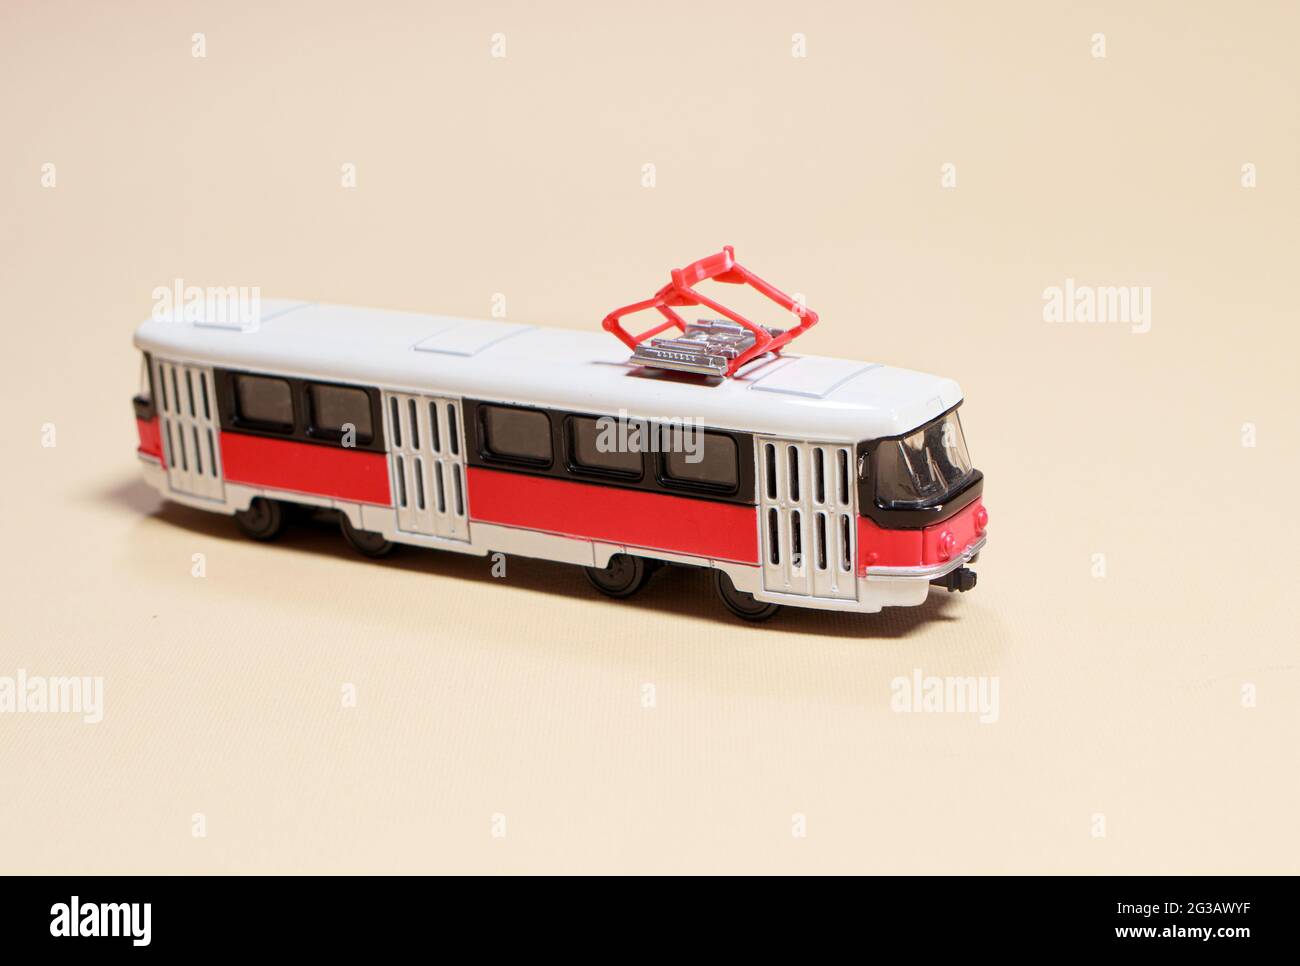 Kinderspielzeug rot weiß Tram auf einem beigen Hintergrund Kopie Platz für Text. Spielzeug für einen Spielwarenladen, Autos für einen Jungen. Stockfoto